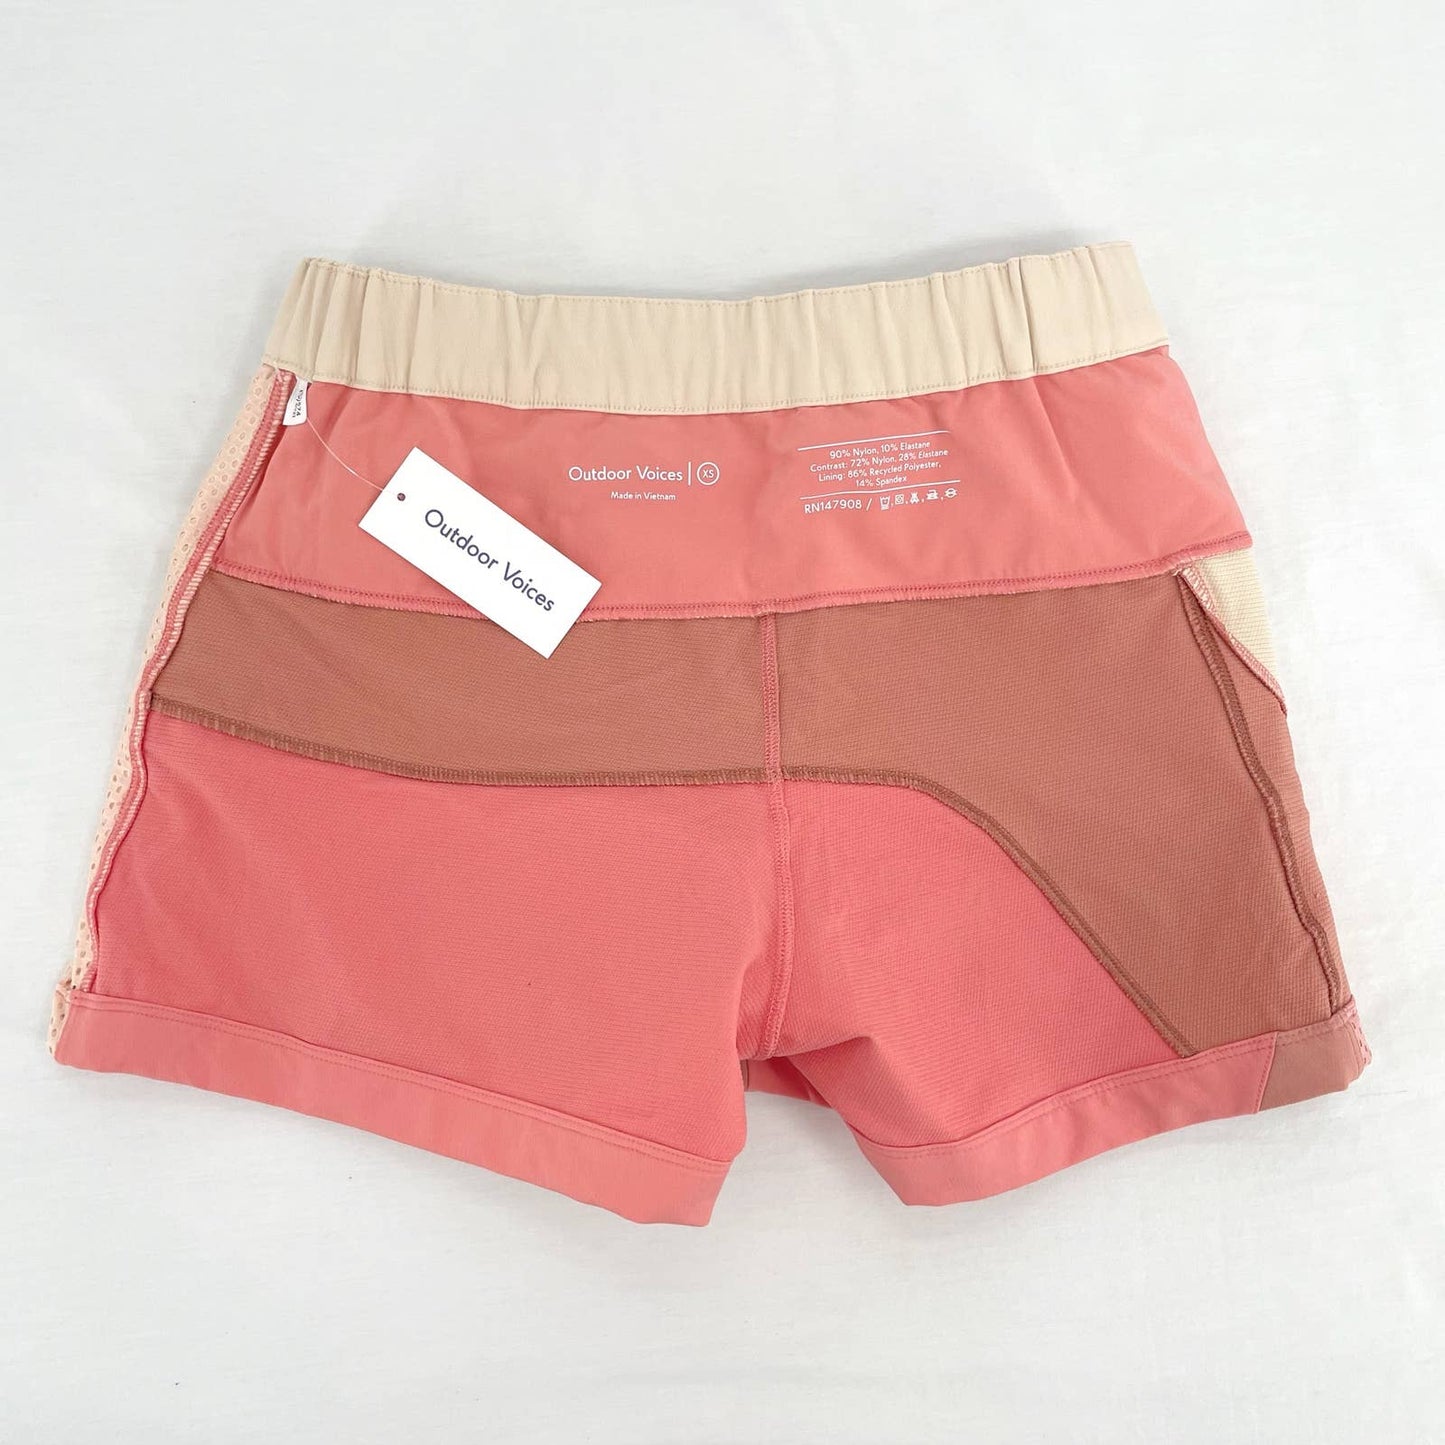 NEW Outdoor Voices RecTrek 3” Colorblock Skort Pink Cream Hiking Active Skirt Size XS